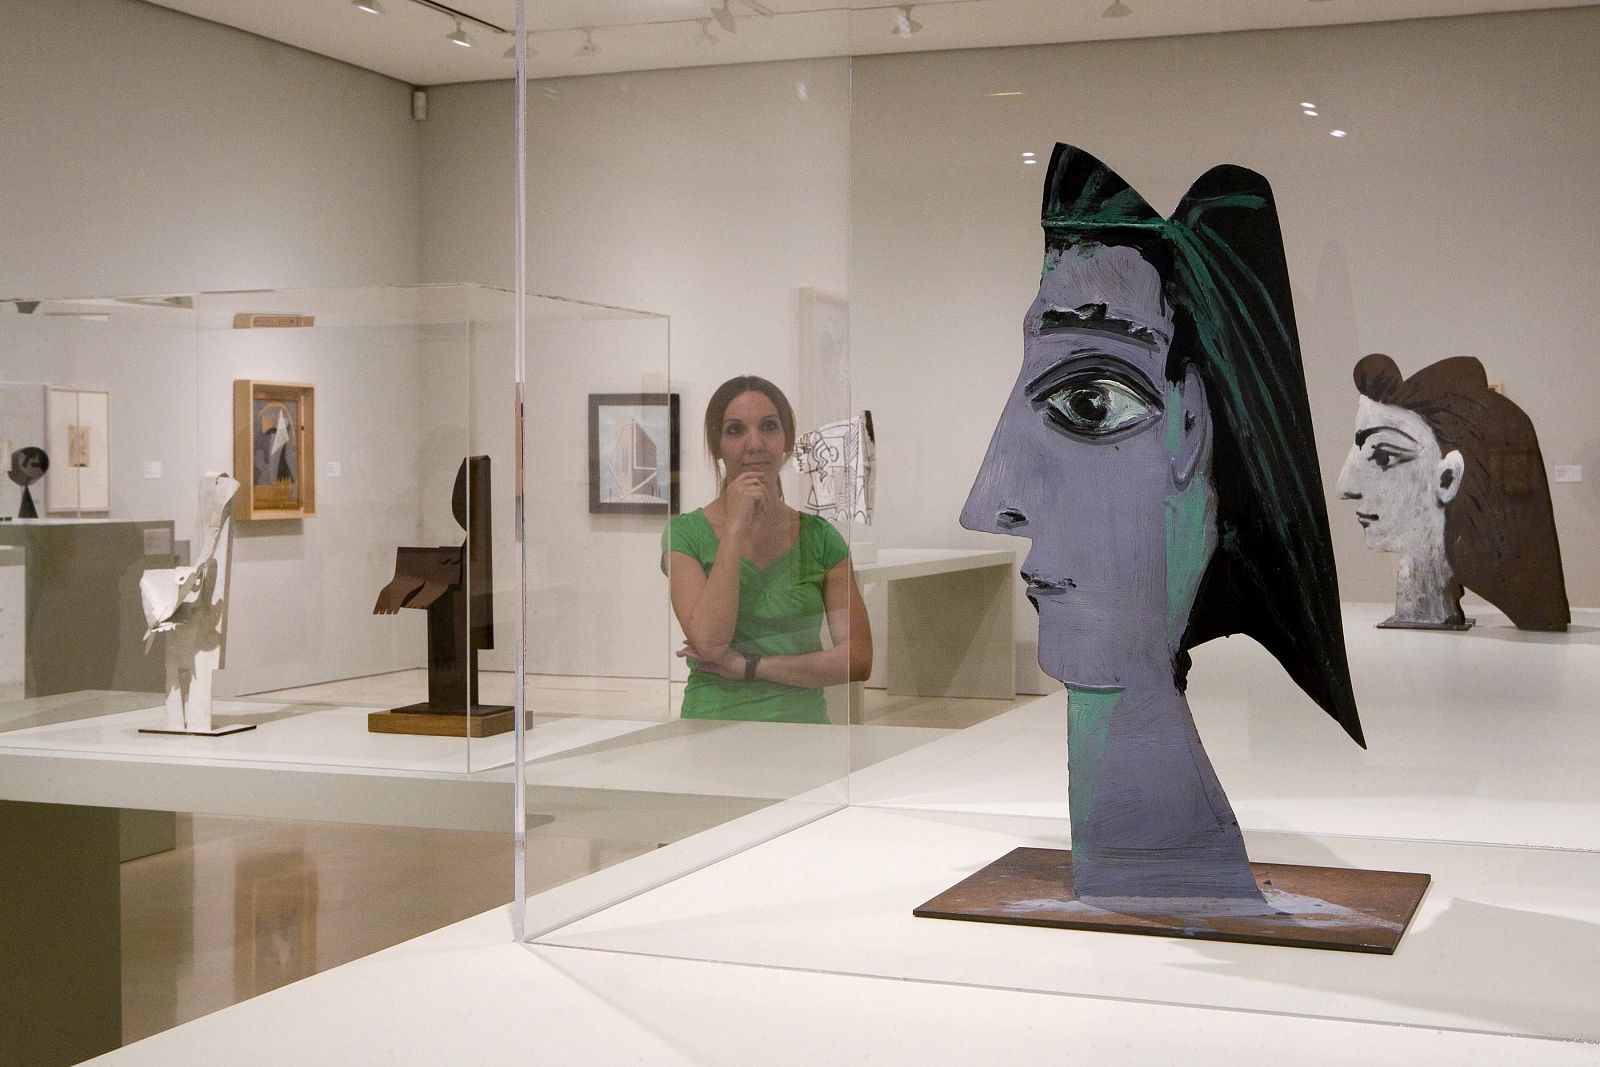 Esculturas de la nueva muestra del Museo Picasso Málaga, "La escultura tardía de Picasso. Mujer. La colección en contexto", que puede visitarse hasta el 30 de agosto.